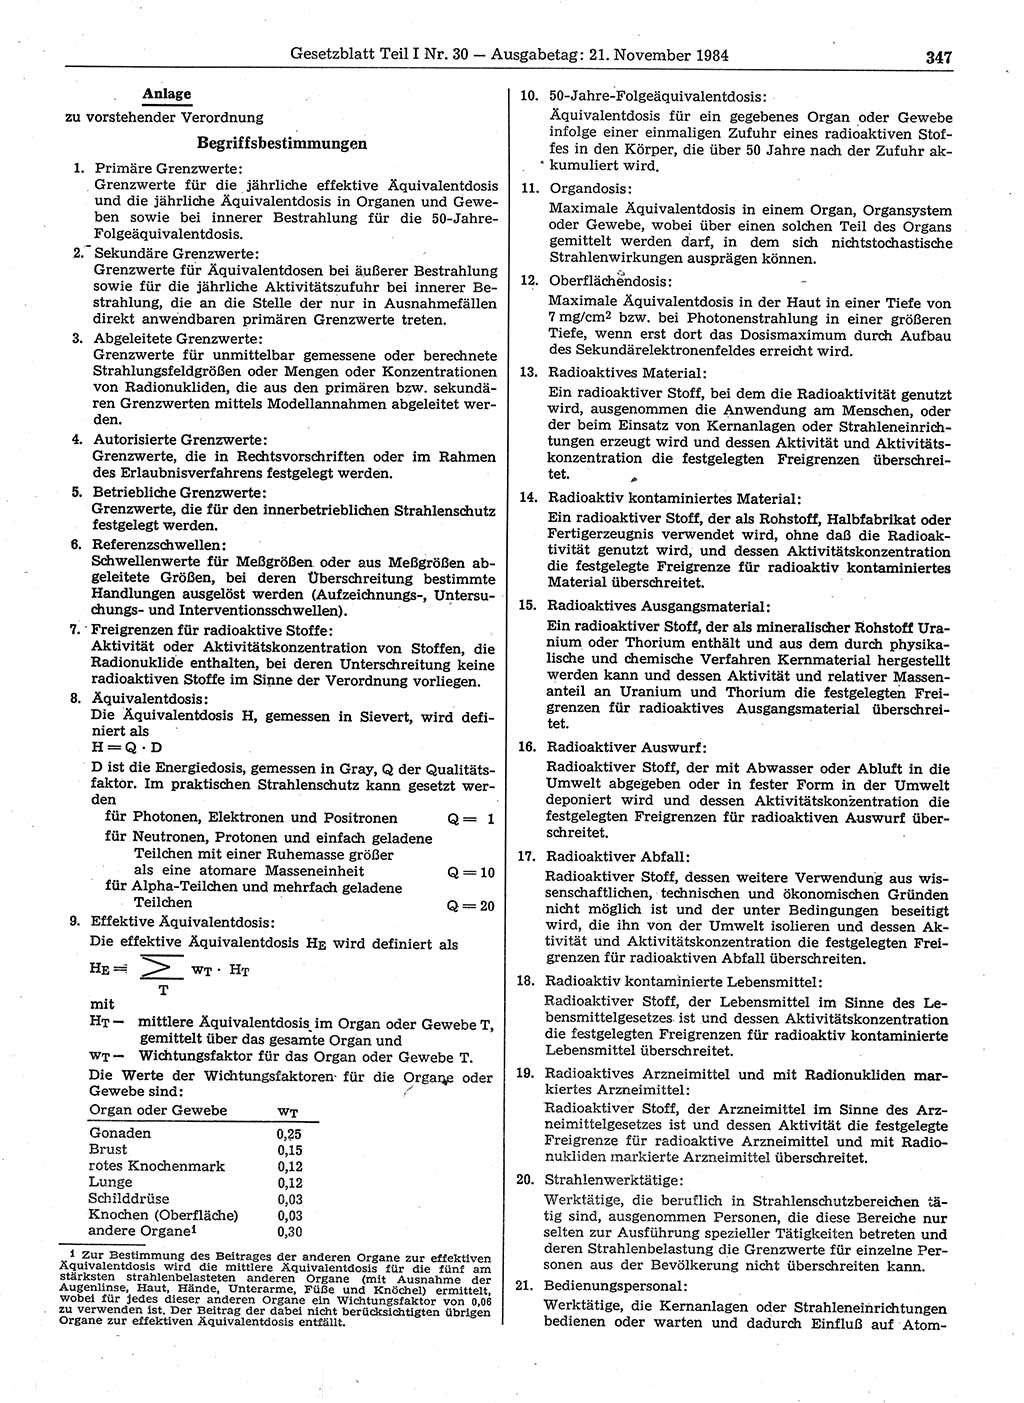 Gesetzblatt (GBl.) der Deutschen Demokratischen Republik (DDR) Teil Ⅰ 1984, Seite 347 (GBl. DDR Ⅰ 1984, S. 347)